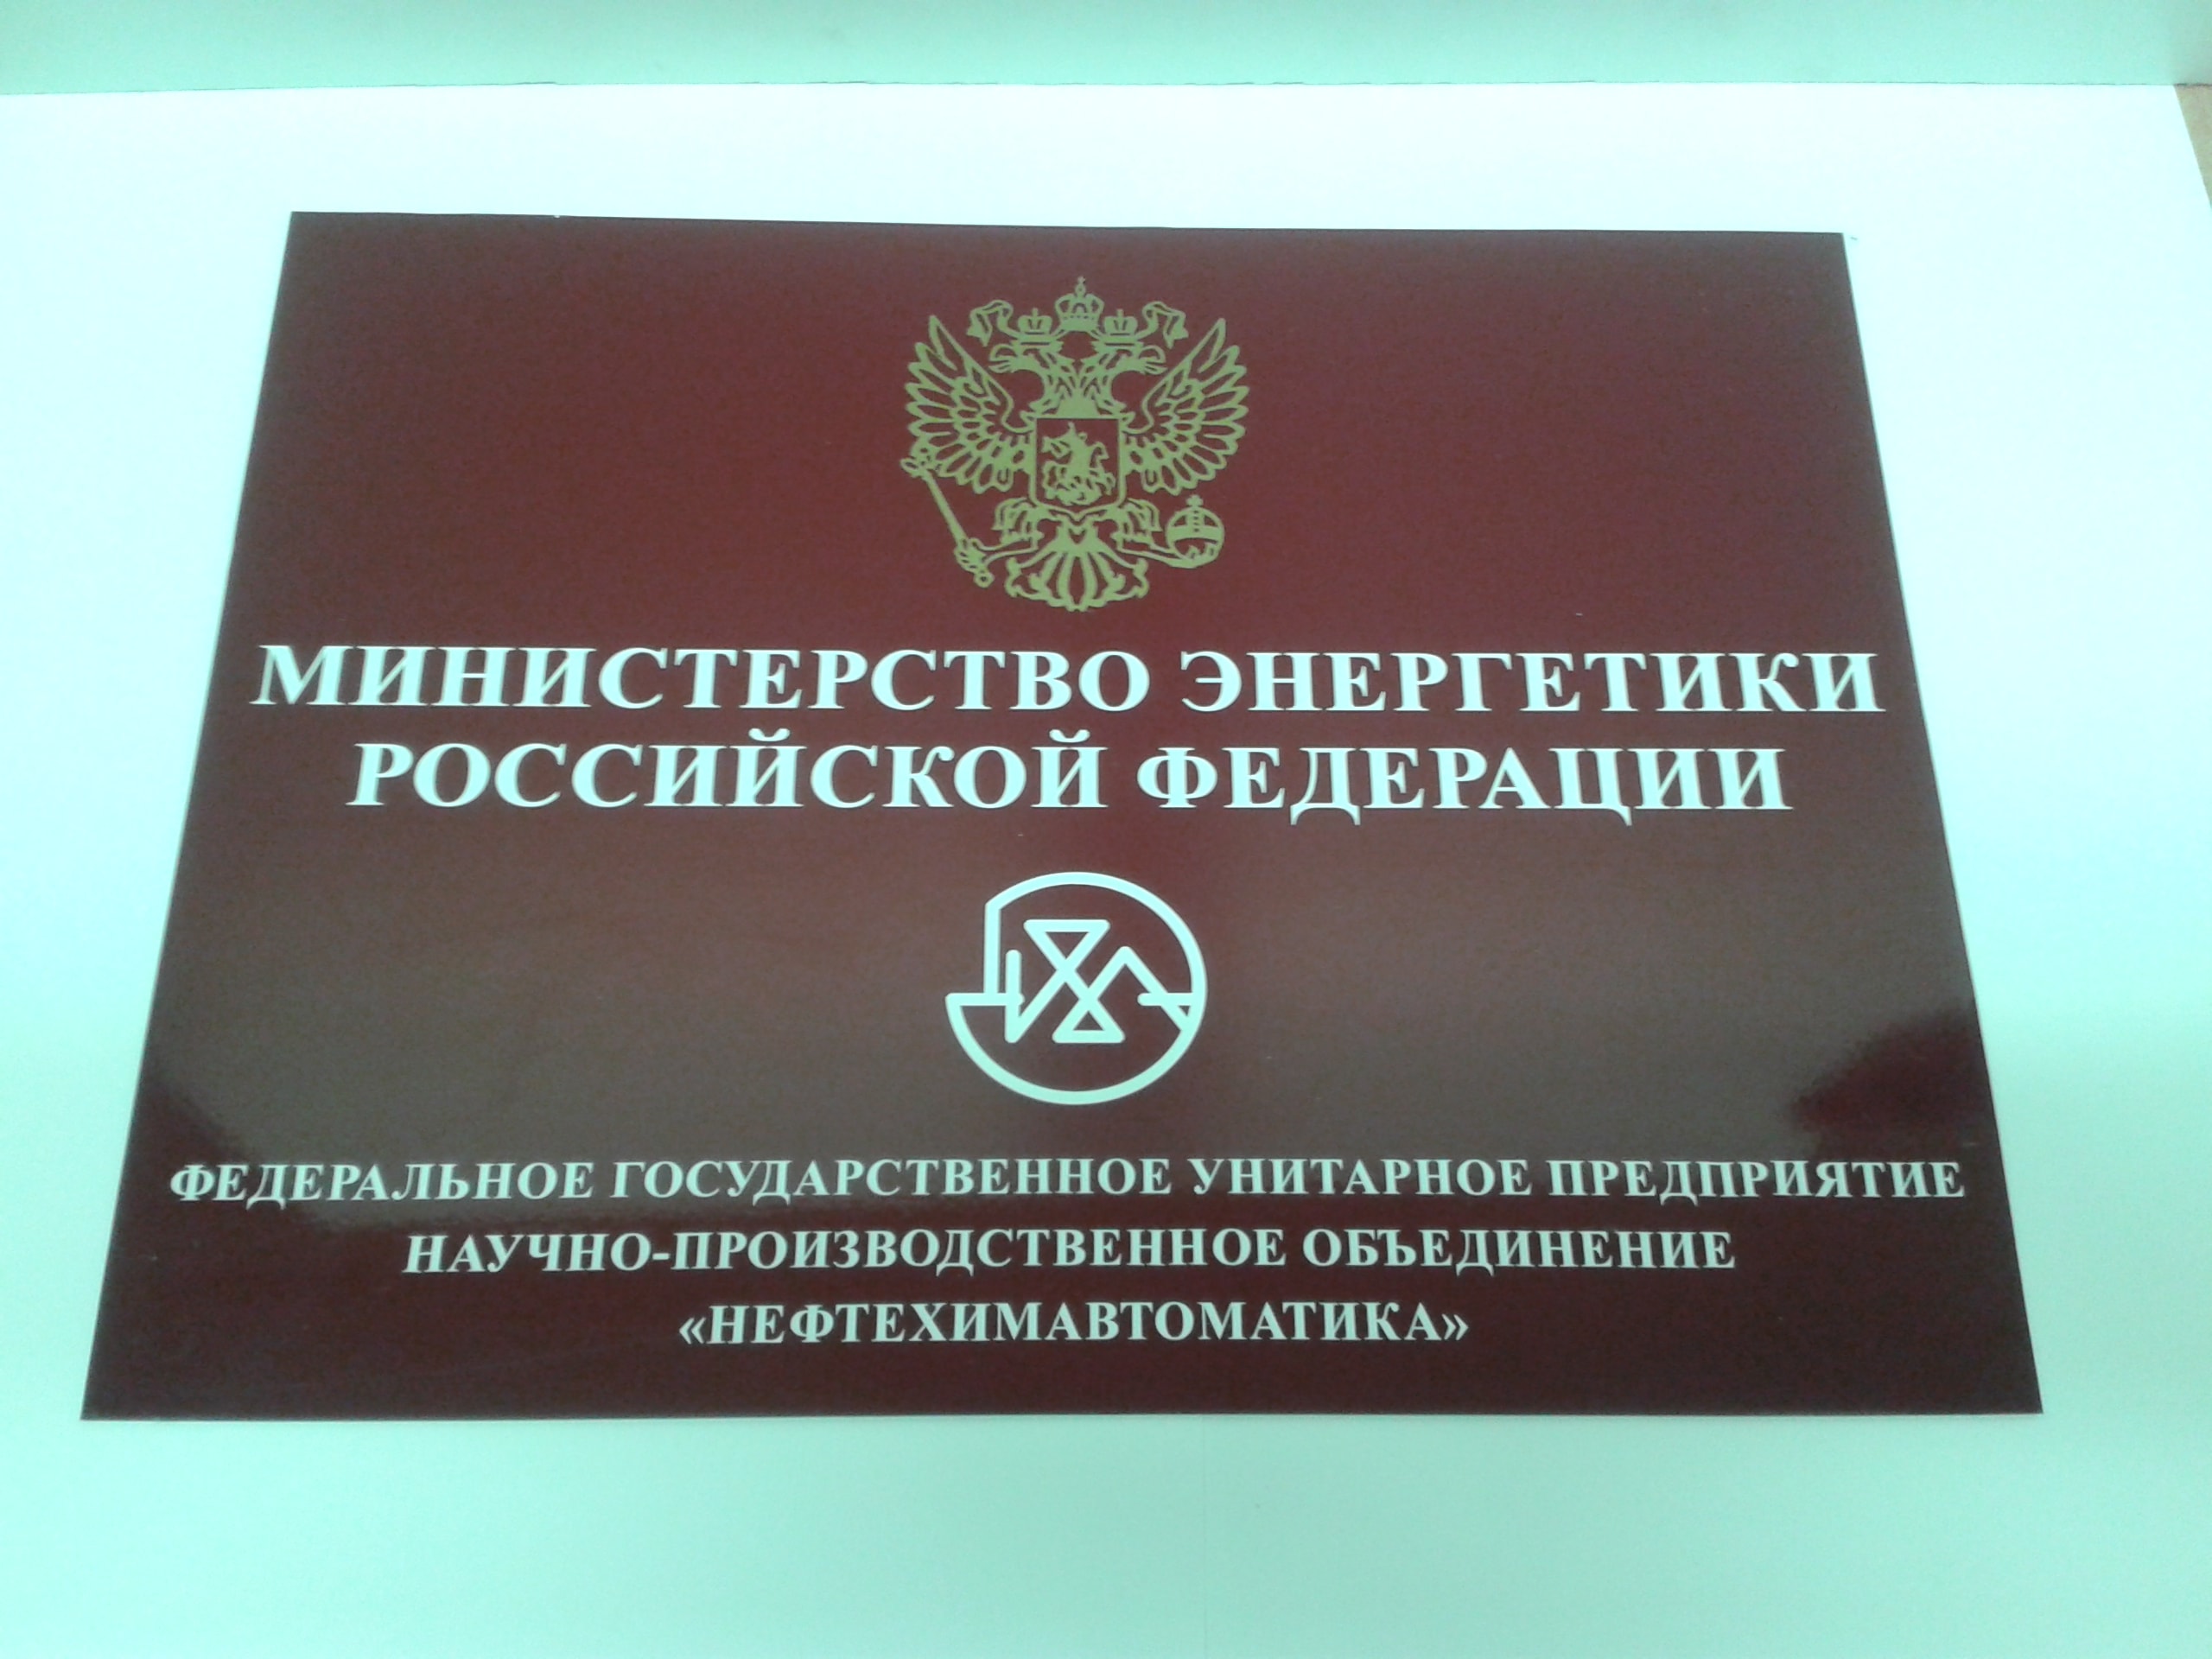 Фасадная табличка из пластика для Министерства энергетики Российской Федерации.